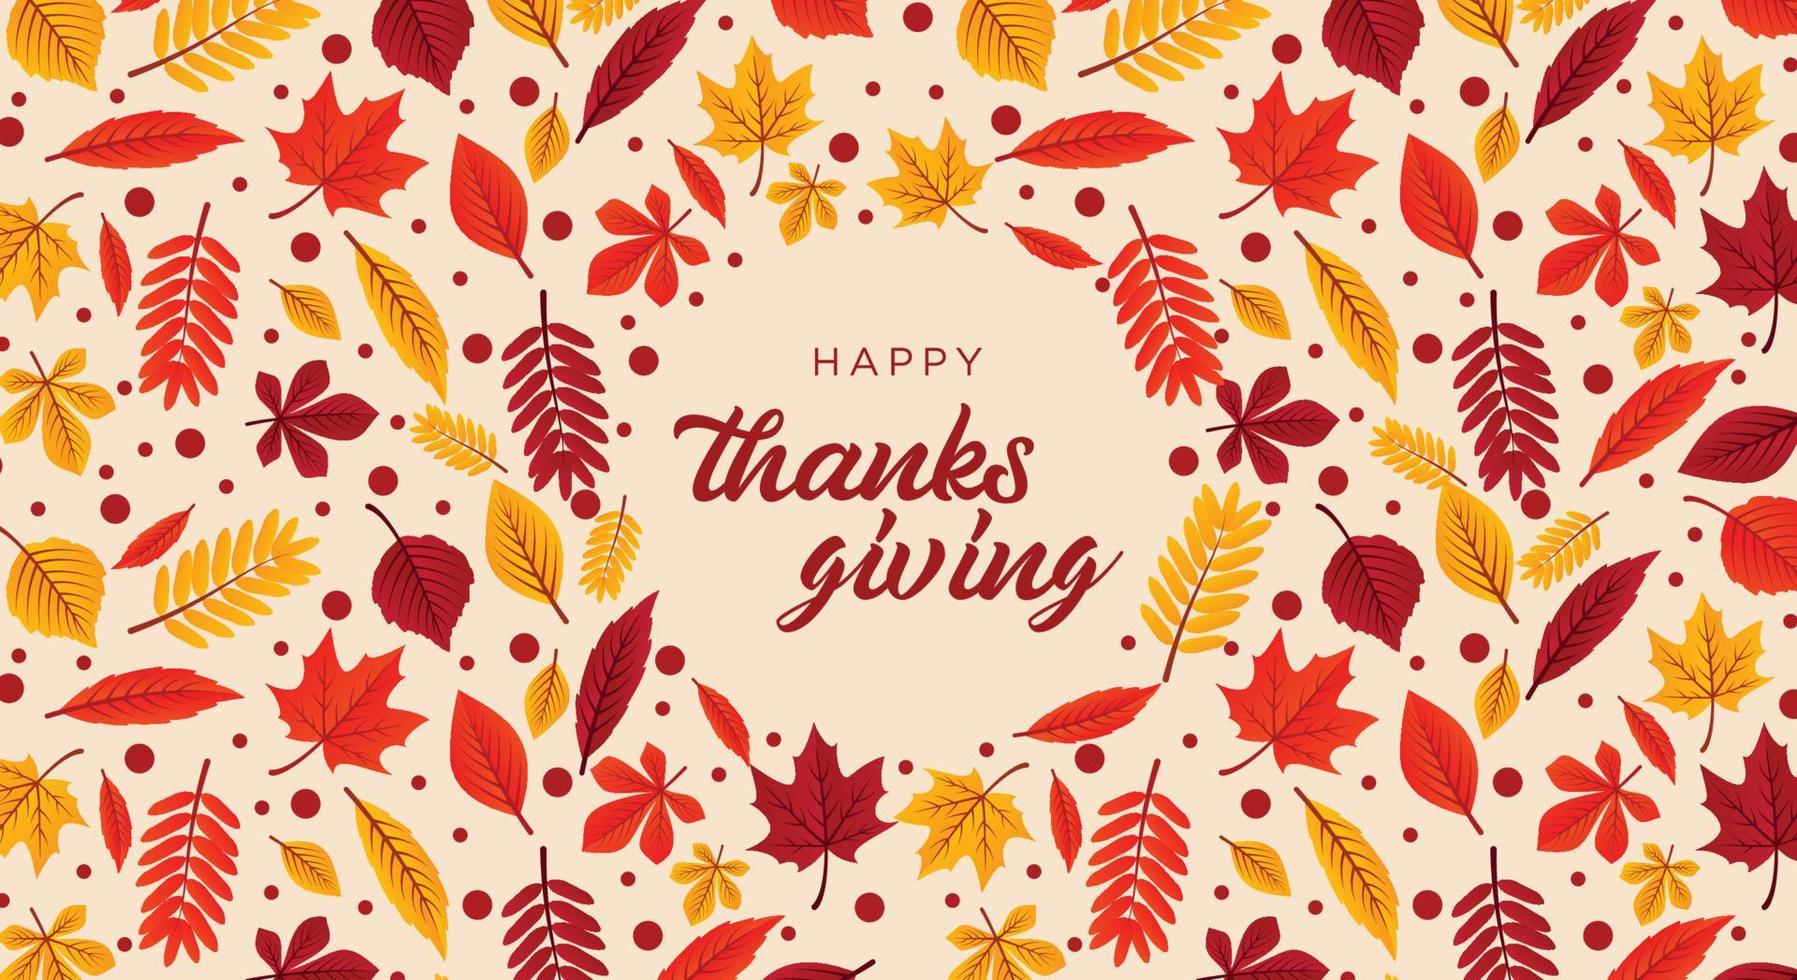 mise en page de typographie festive de joyeux thanksgiving. cadre avec feuilles d'automne, lettrage de calligraphie, place pour le texte. vecteur